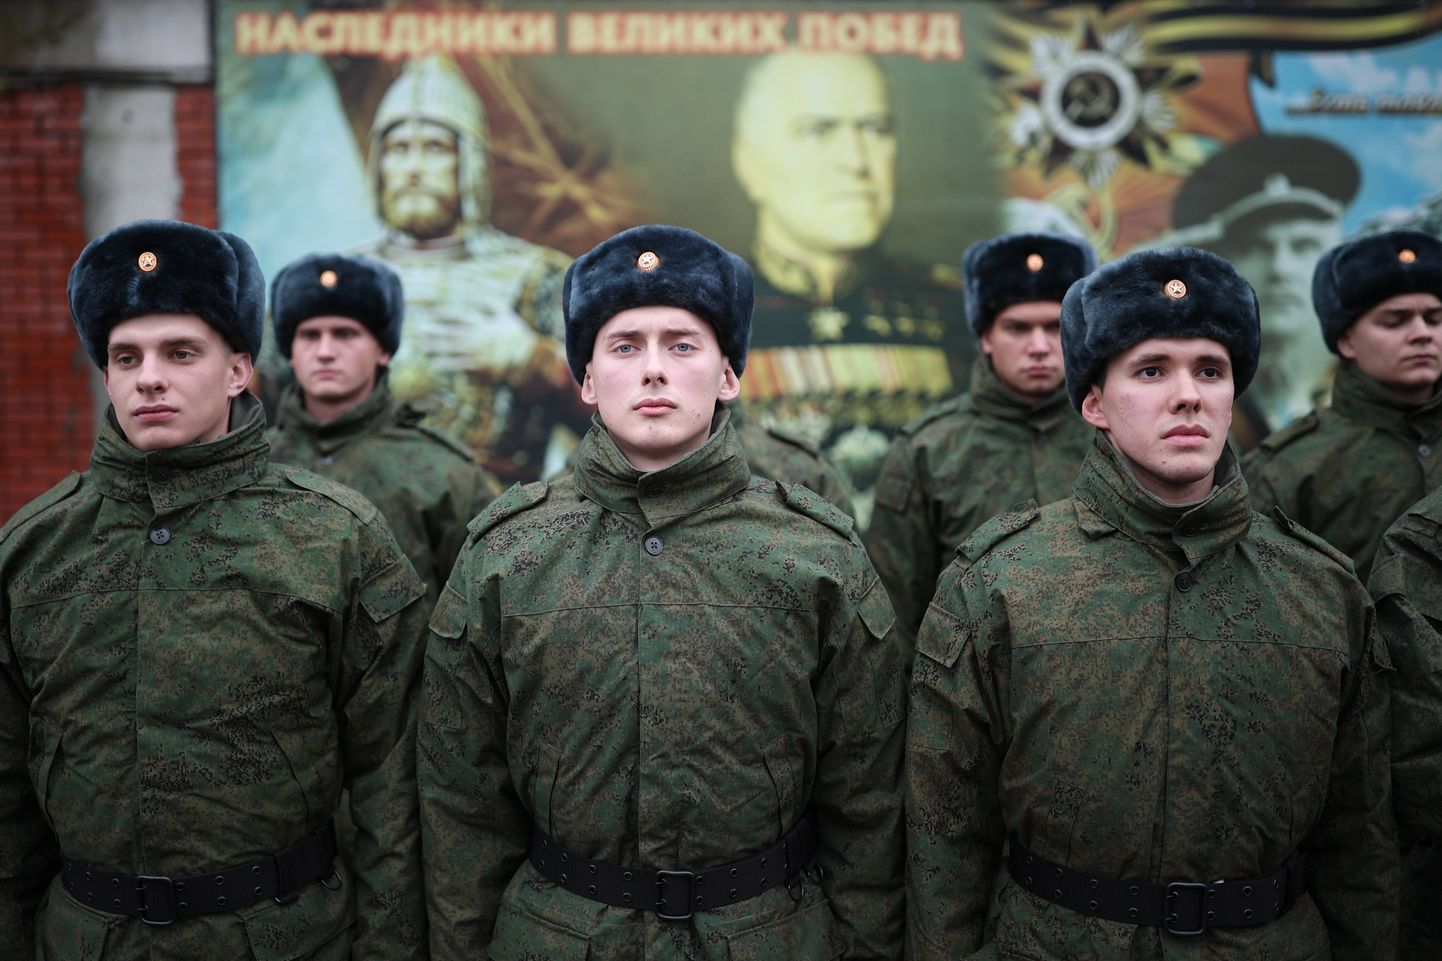 Venemaa presidendirügemendi ajateenijad.